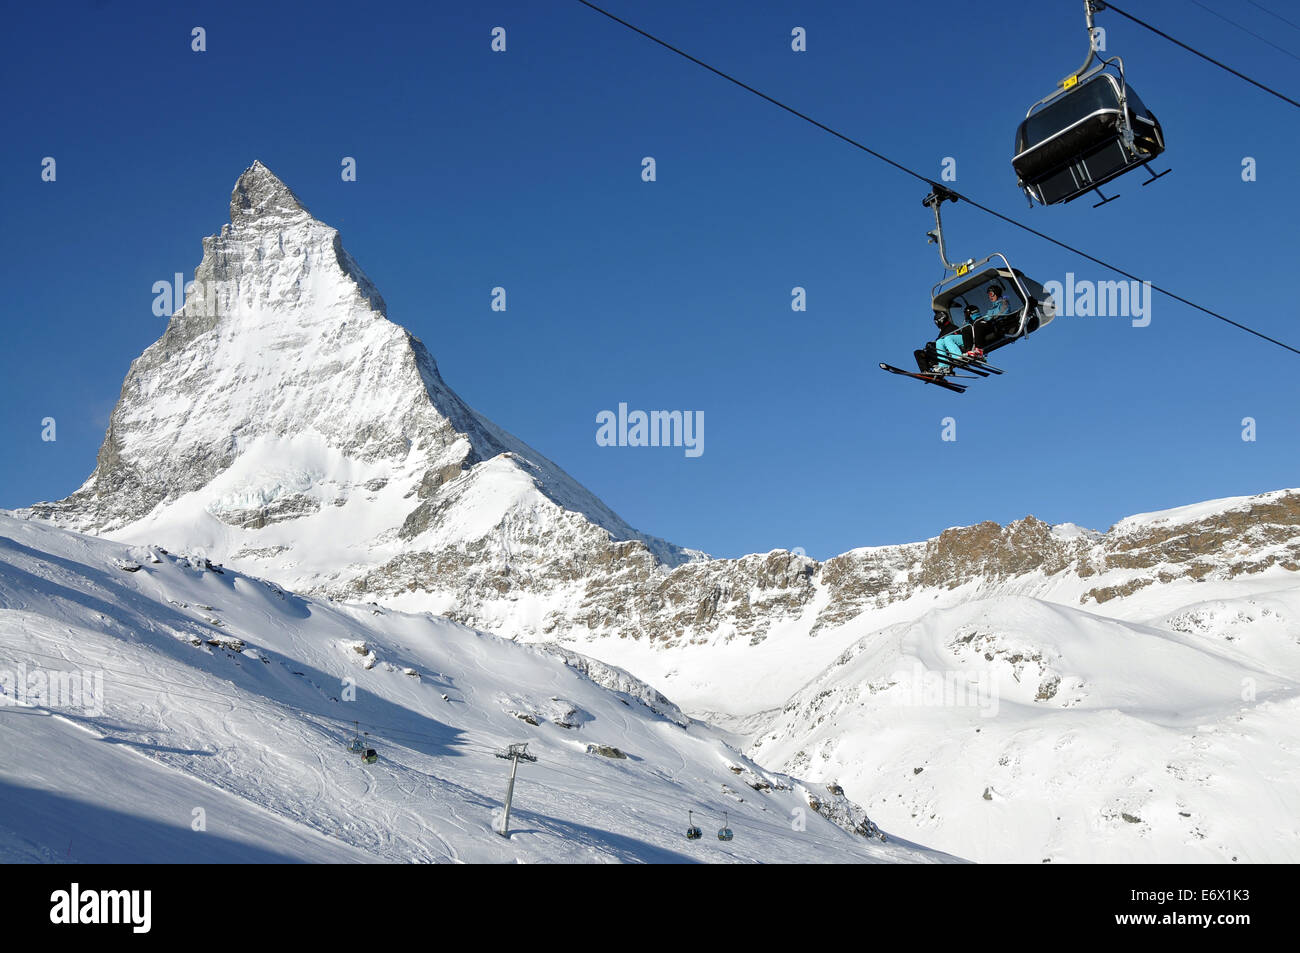 Bei Trockener Steg auf dem Theodulgletscher mit Matterhorn im Hintergrund, Skigebiet Zermatt, Wallis, Schweiz Stockfoto